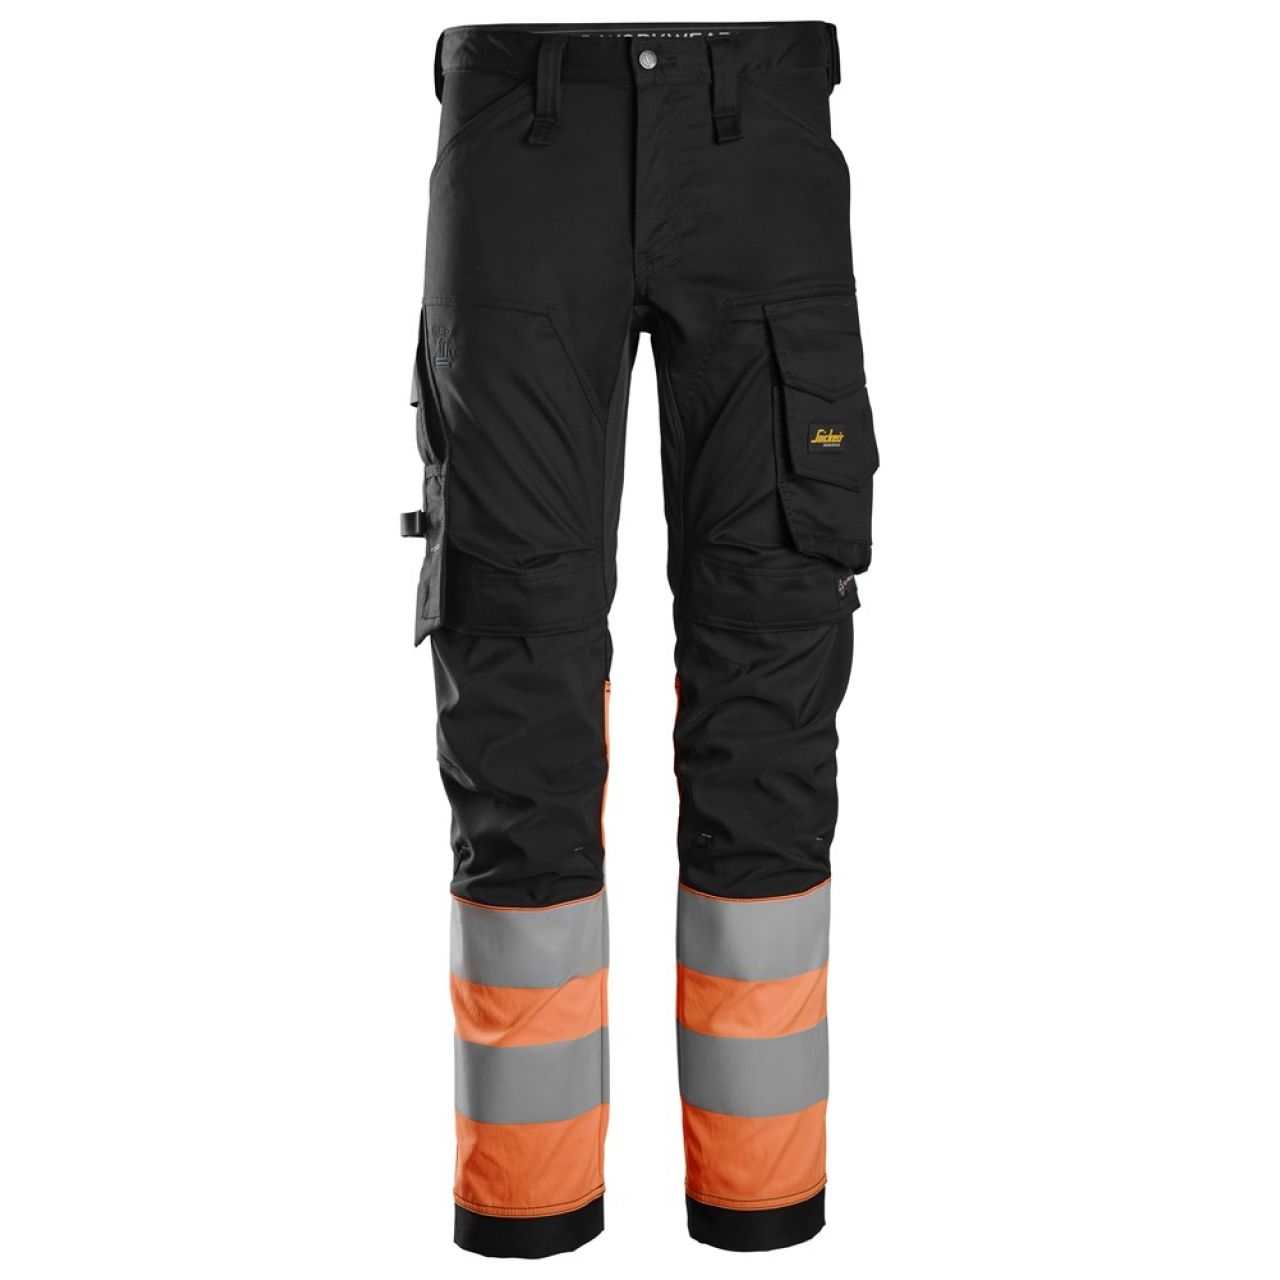 6334 Pantalones largos de trabajo elásticos de alta visibilidad clase 1 negro-naranja talla 160